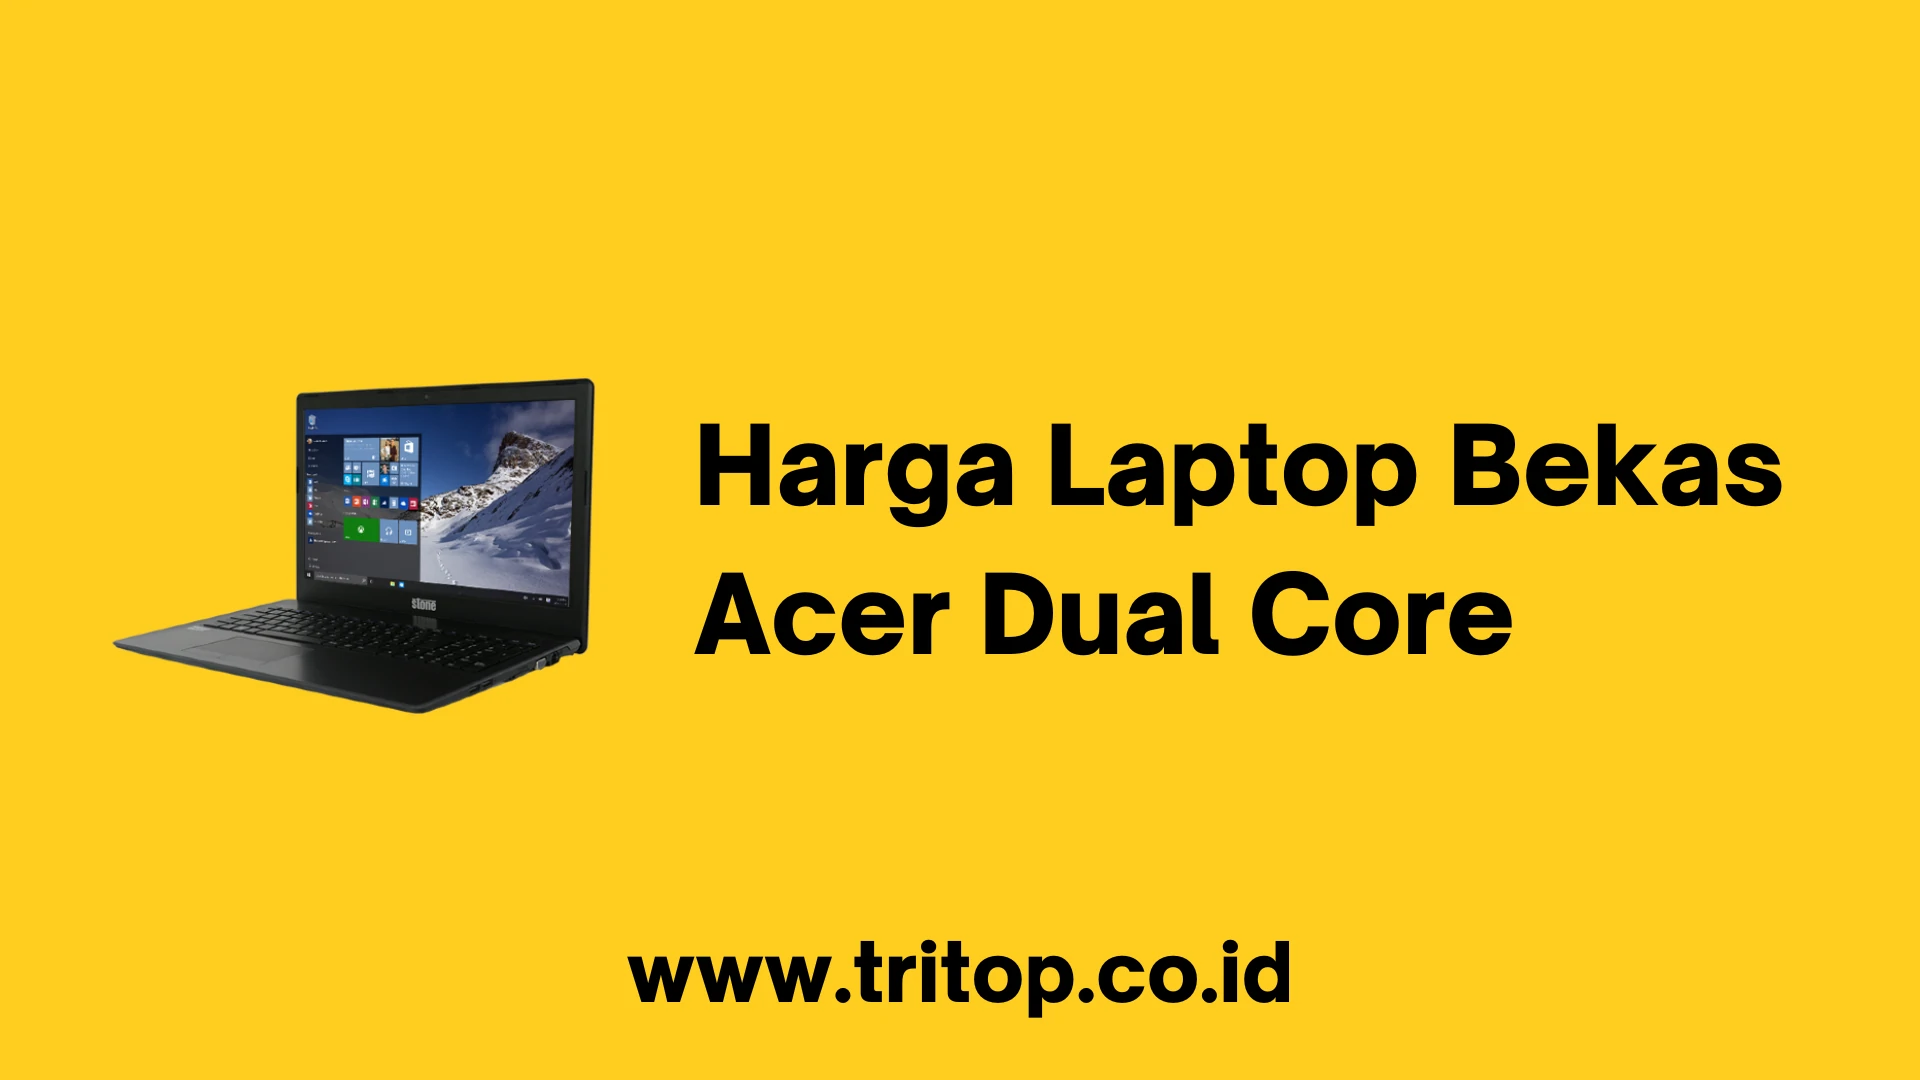 Harga Laptop Bekas Acer Dual Core